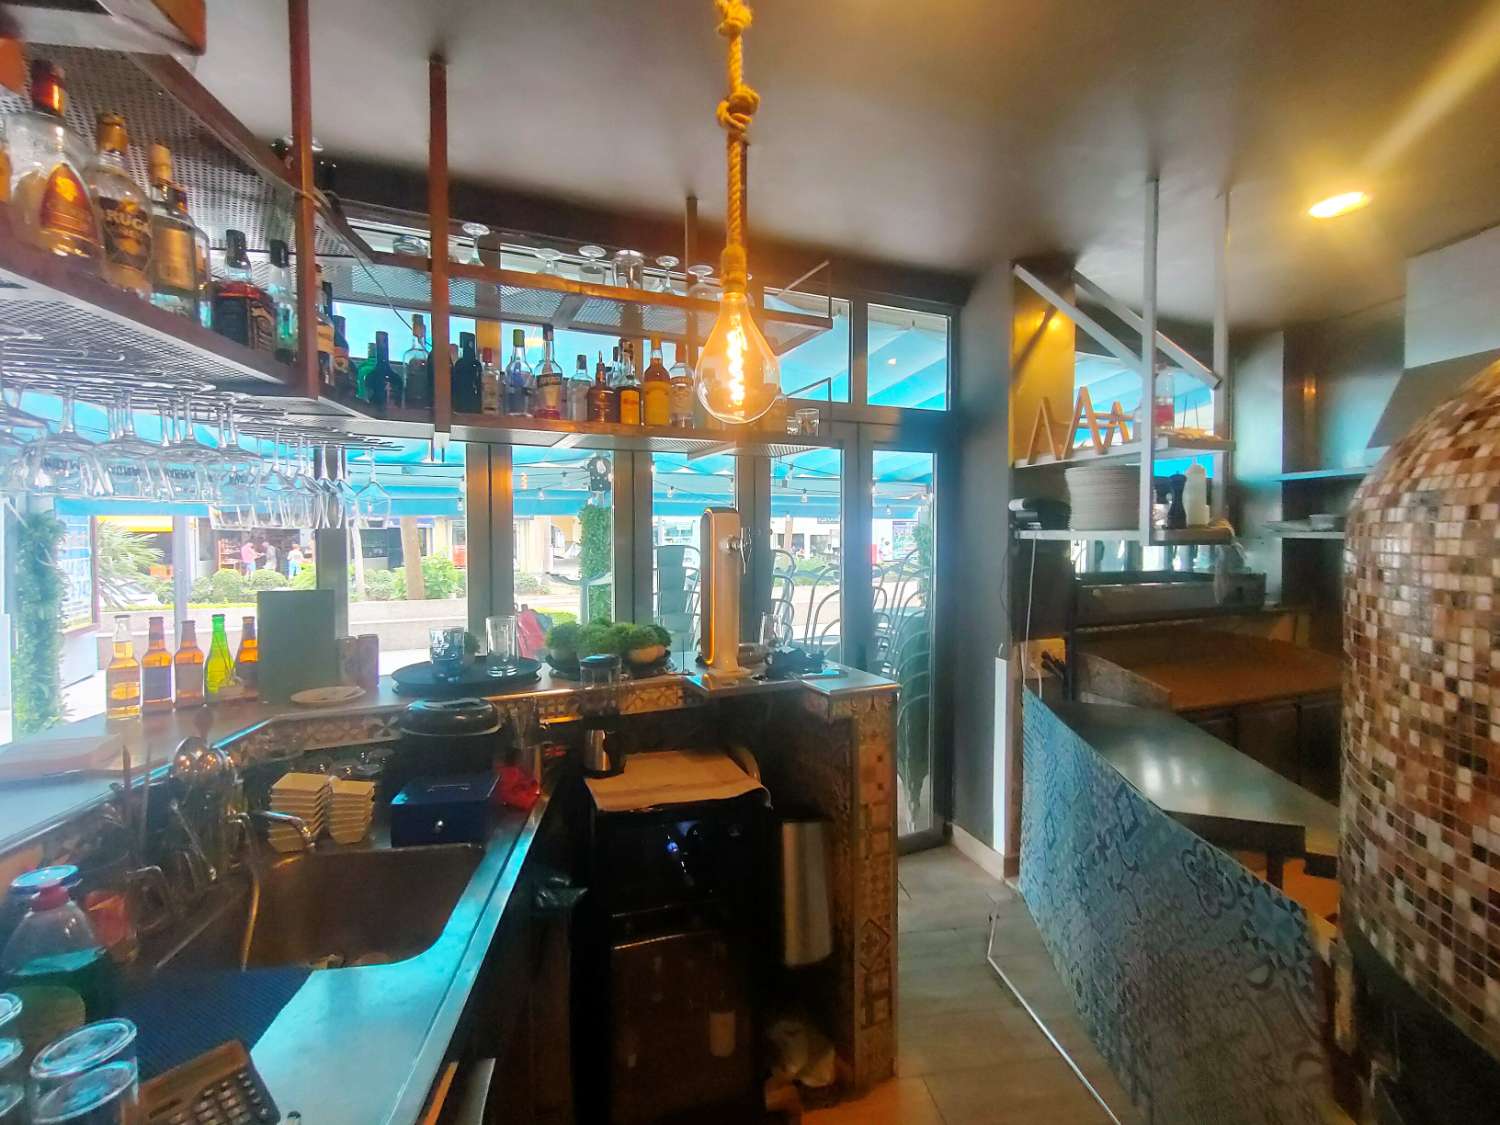 Restaurant zue transfer in Arroyo de la Miel (Benalmádena)